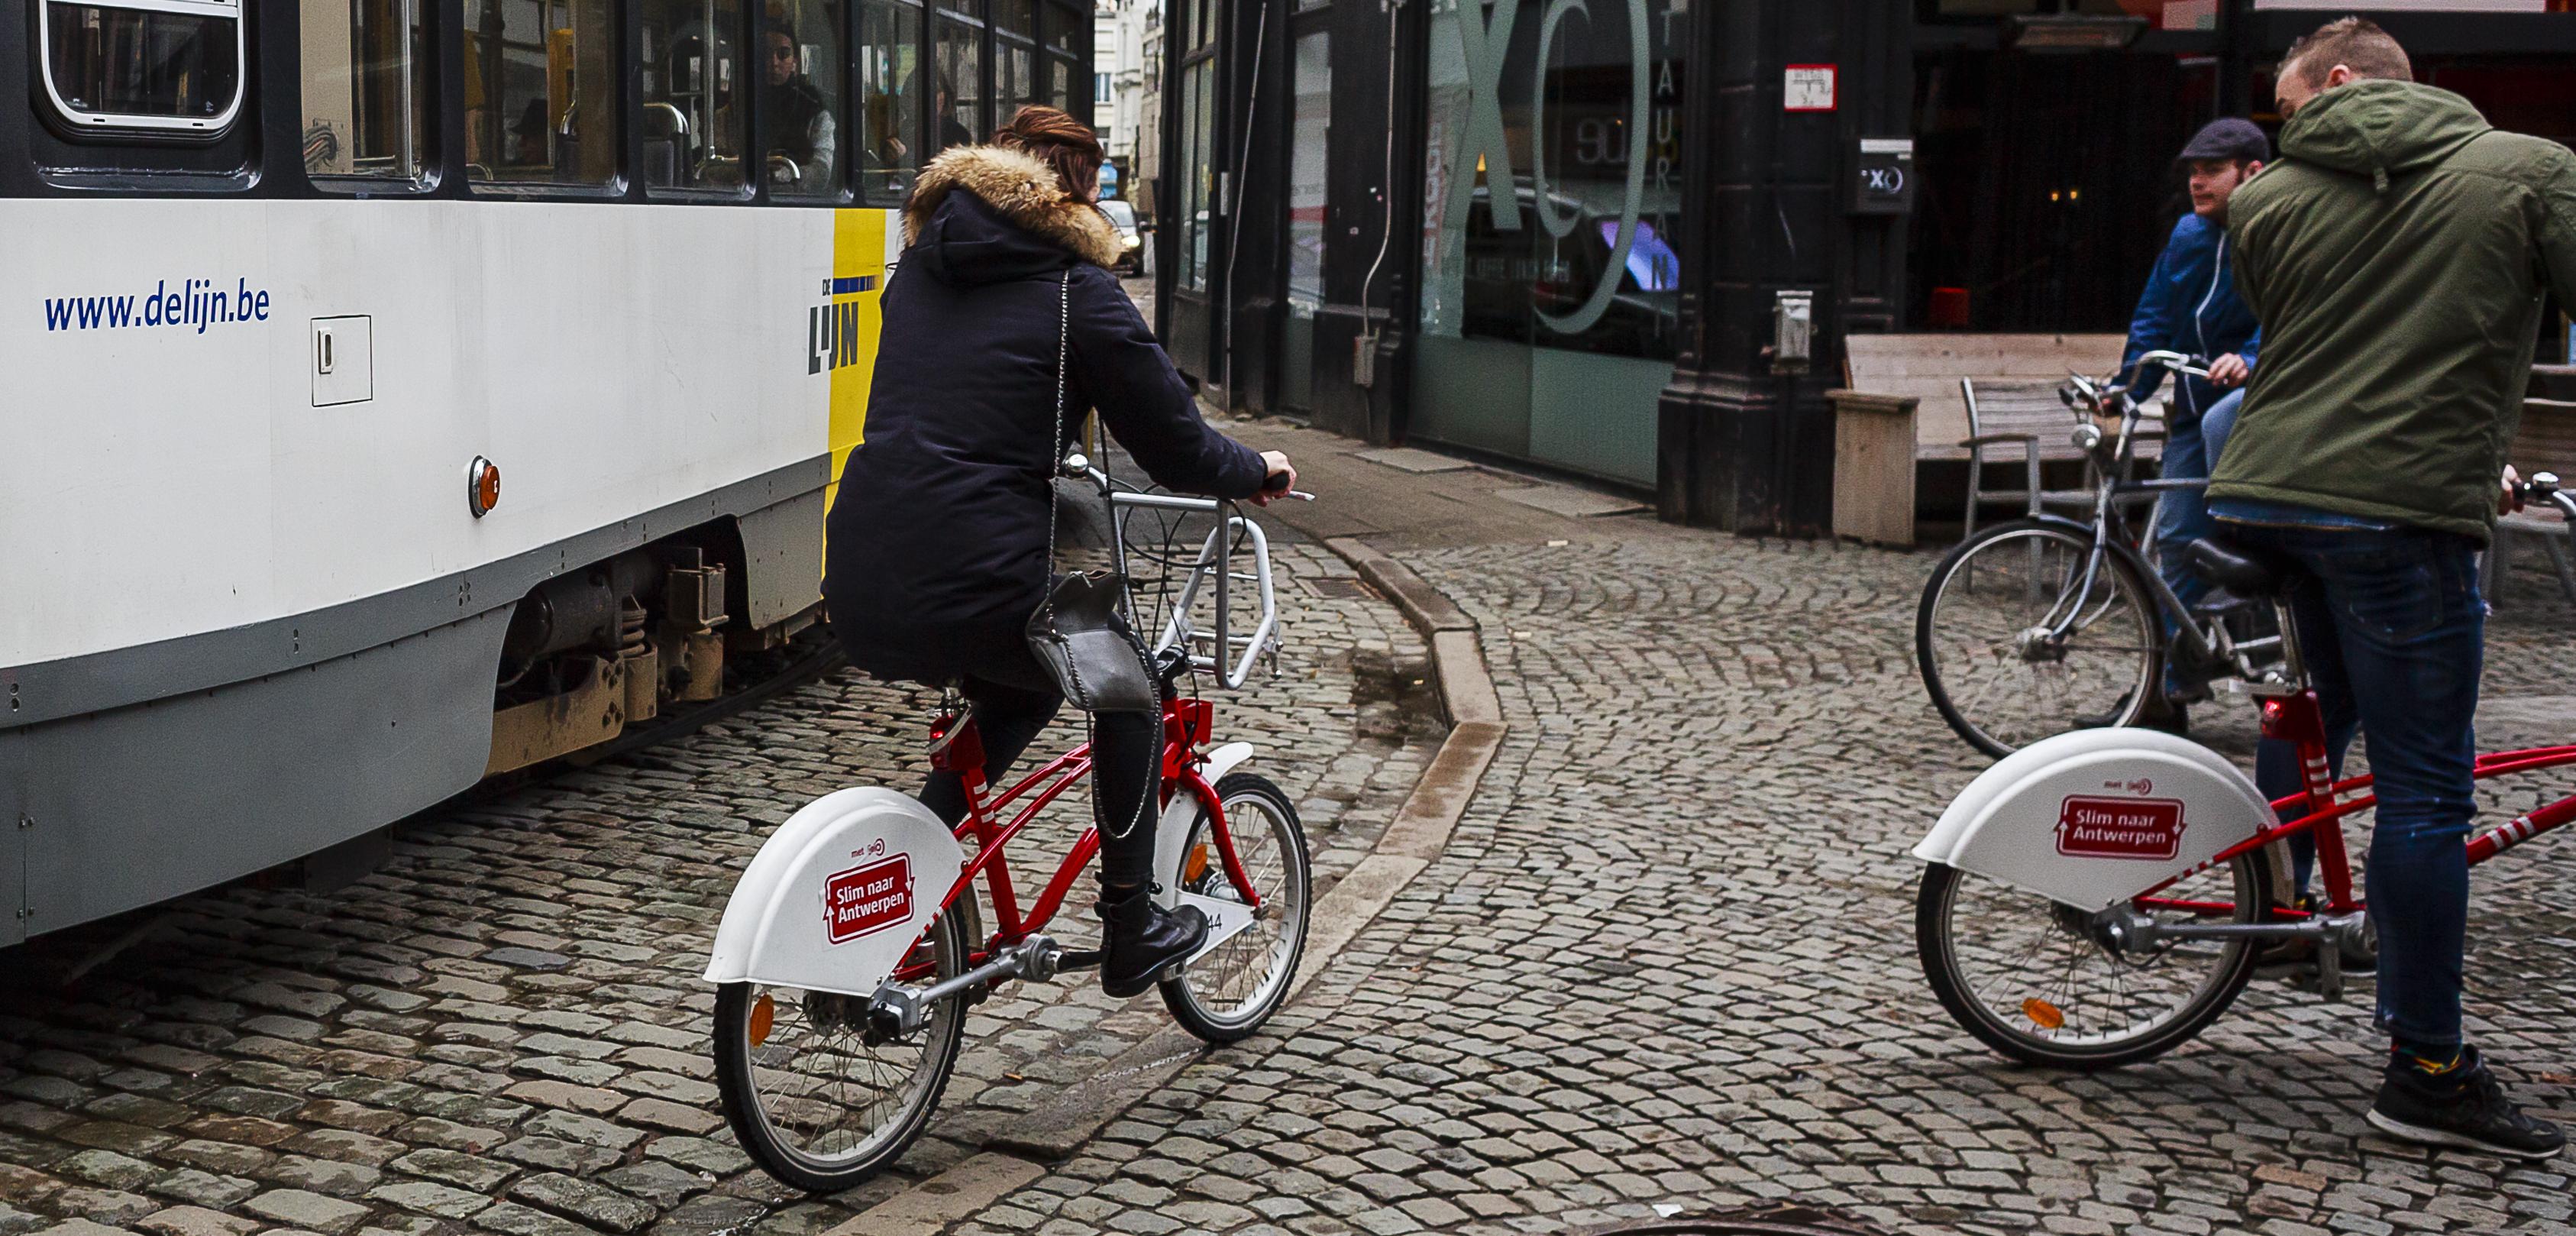 knal sessie Trek Deelfietsen Velo trappen soms door: “Meld problemen met defecte fietsen”  (Antwerpen) | Gazet van Antwerpen Mobile